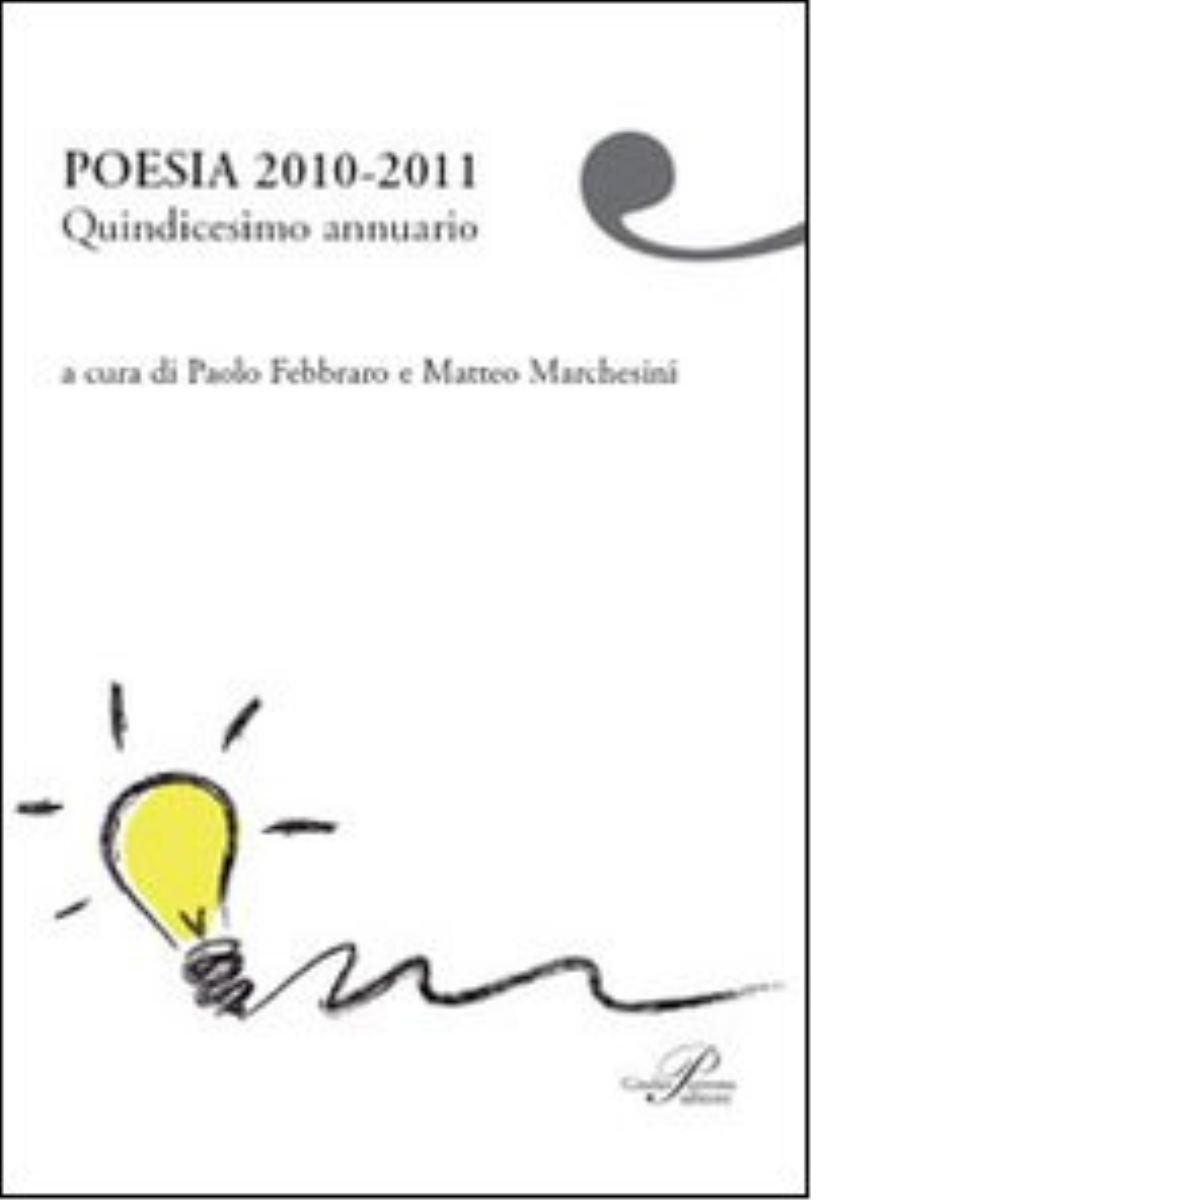 Poesia 2010-2011. Quindicesimo annuario di P. Febbraro, M. Marchesini - 2011 libro usato